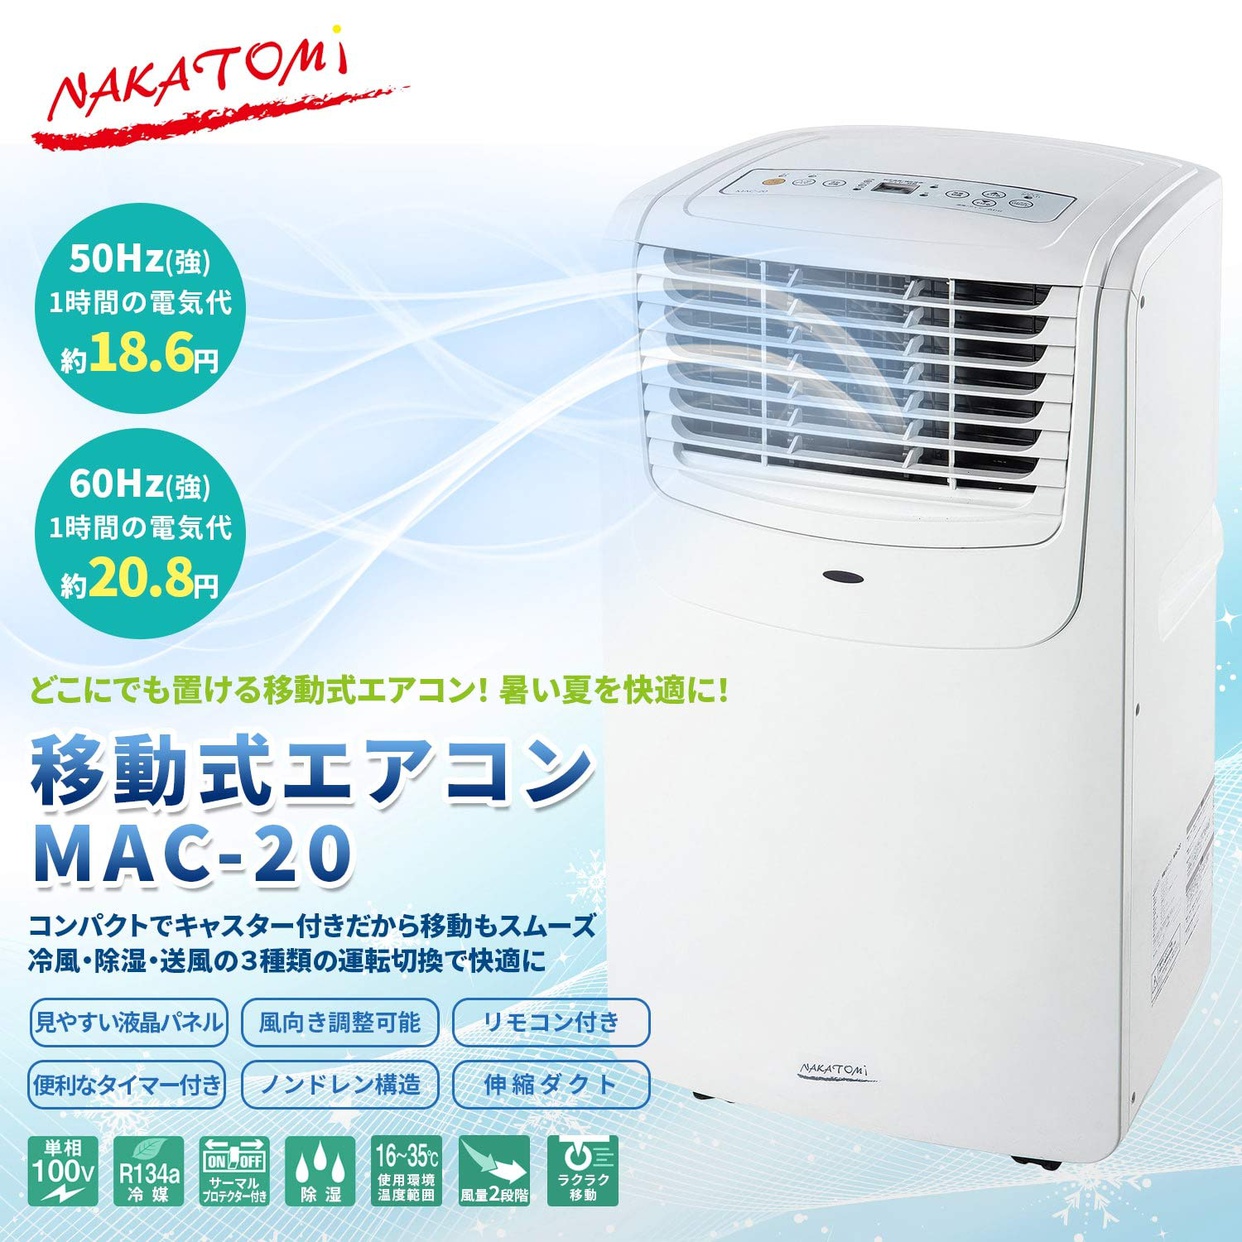 NAKATOMI(ナカトミ) 移動式エアコン MAC-20の商品画像2 